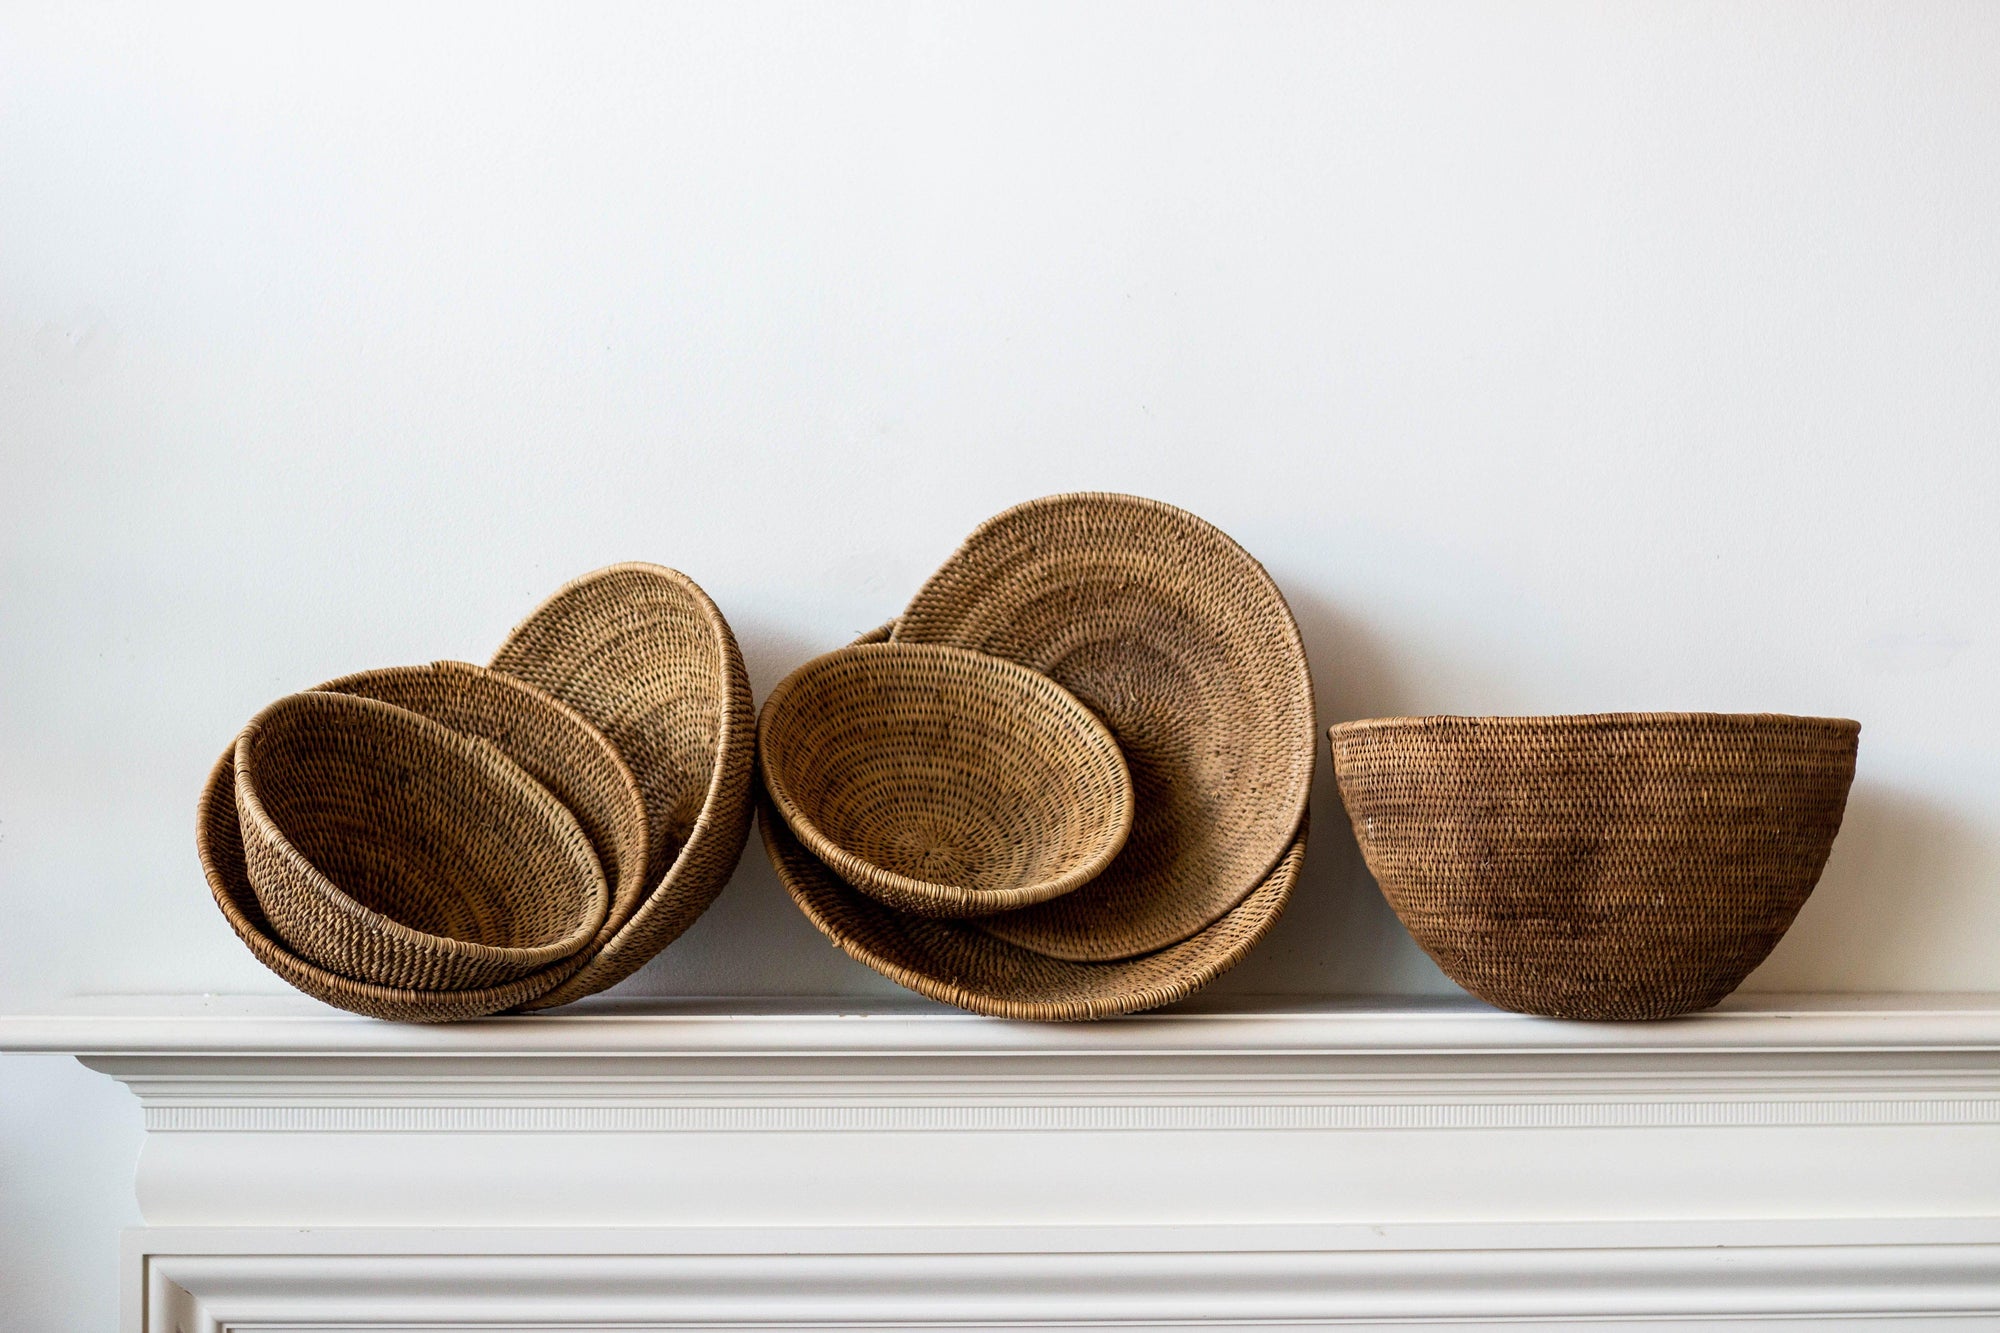 Buhera Harvest Bowls - Kanju Interiors